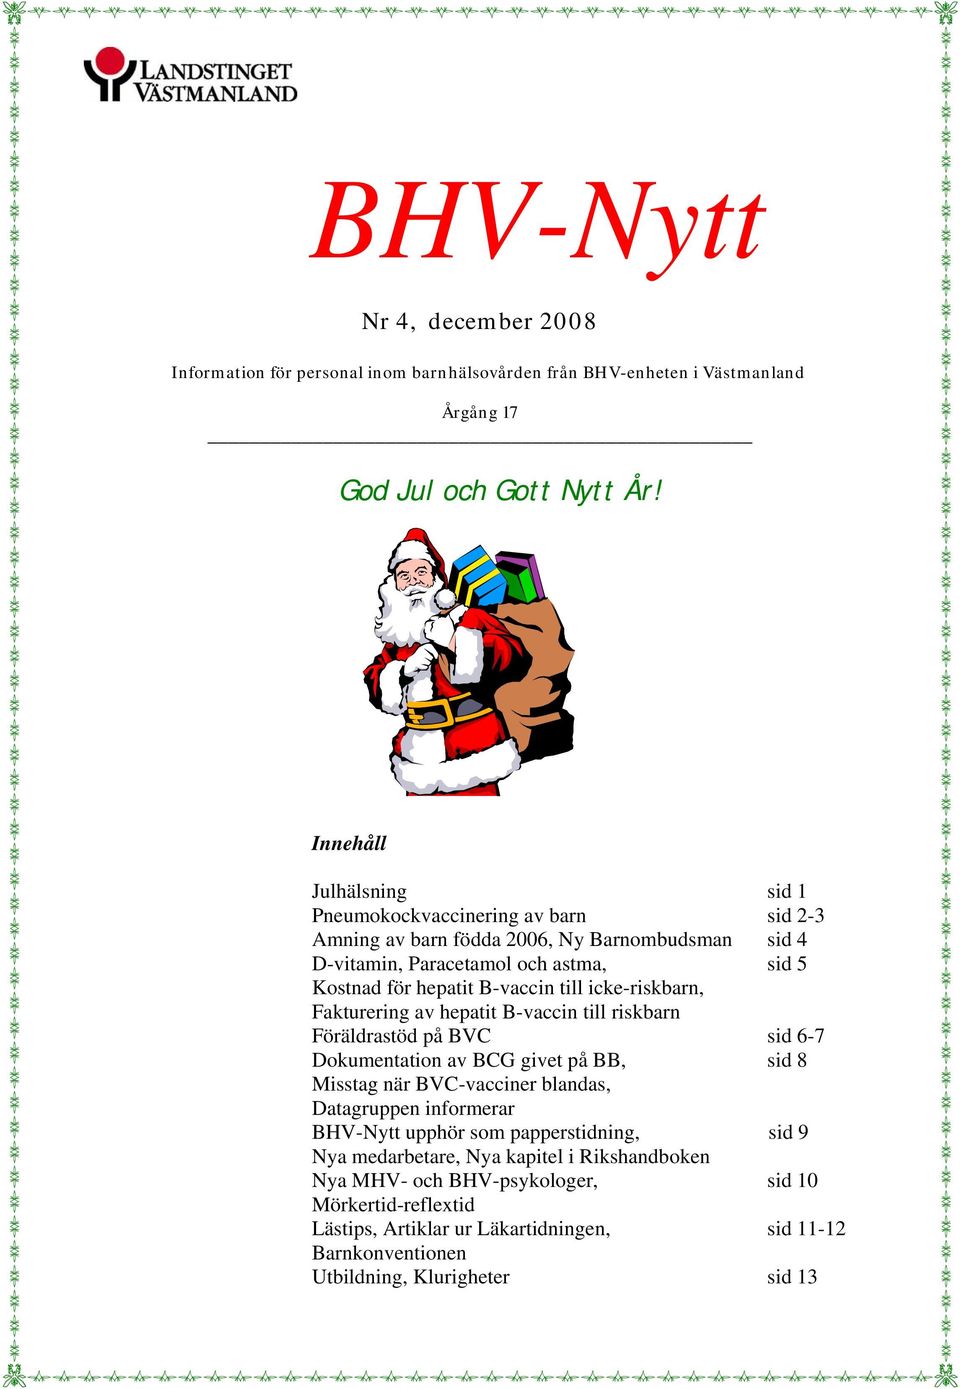 icke-riskbarn, Fakturering av hepatit B-vaccin till riskbarn Föräldrastöd på BVC sid 6-7 Dokumentation av BCG givet på BB, sid 8 Misstag när BVC-vacciner blandas, Datagruppen informerar